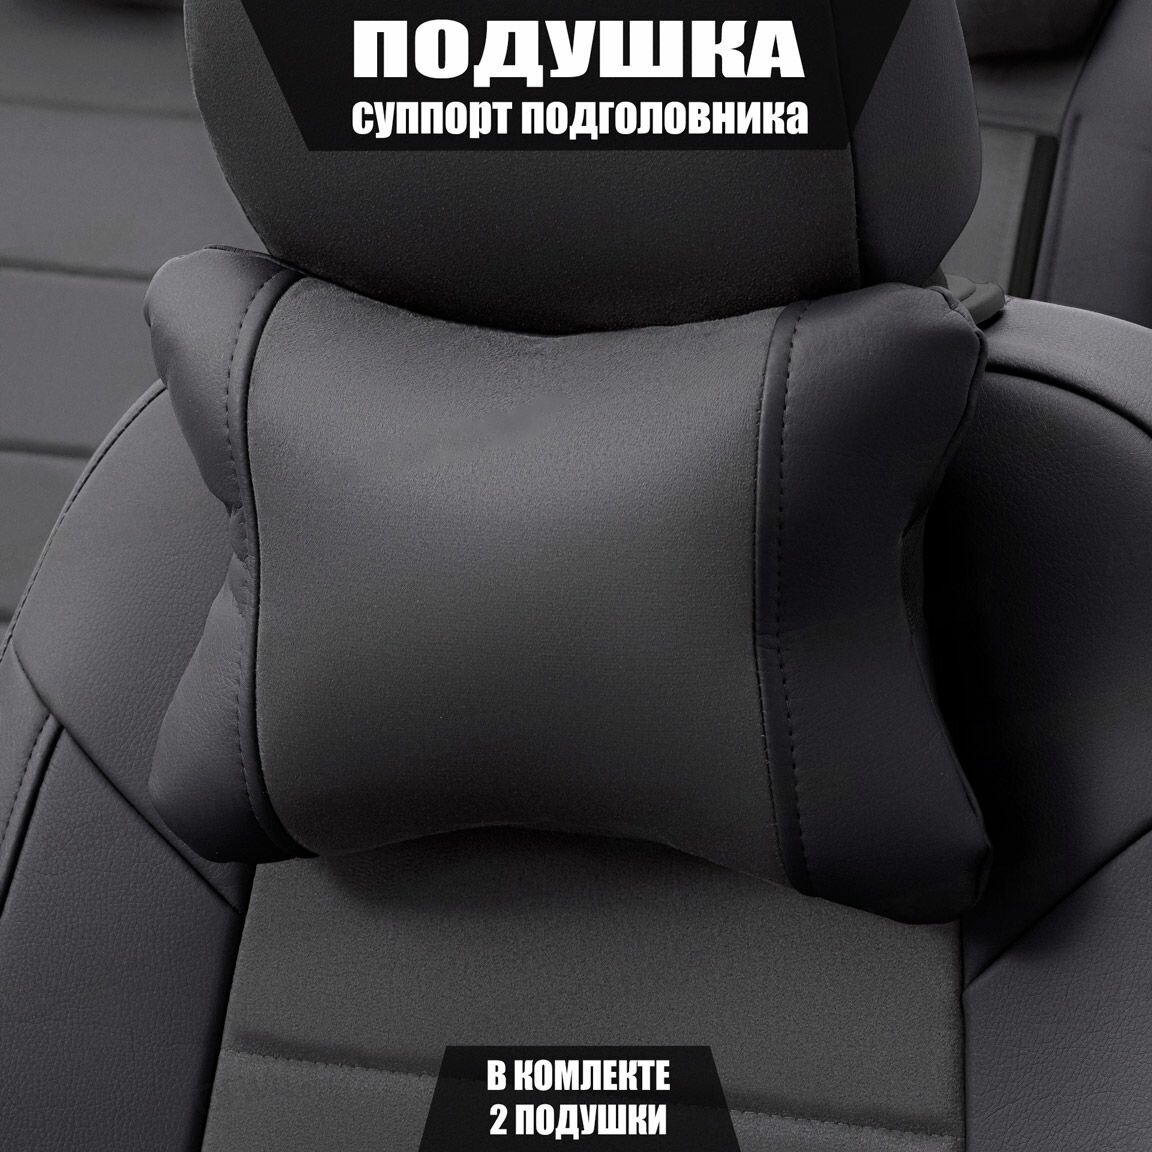 Подушки под шею (суппорт подголовника) для Сузуки Гранд Витара (2000 - 2006) внедорожник 5 дверей / Suzuki Grand Vitara, Алькантара, 2 подушки, Черный и темно-серый